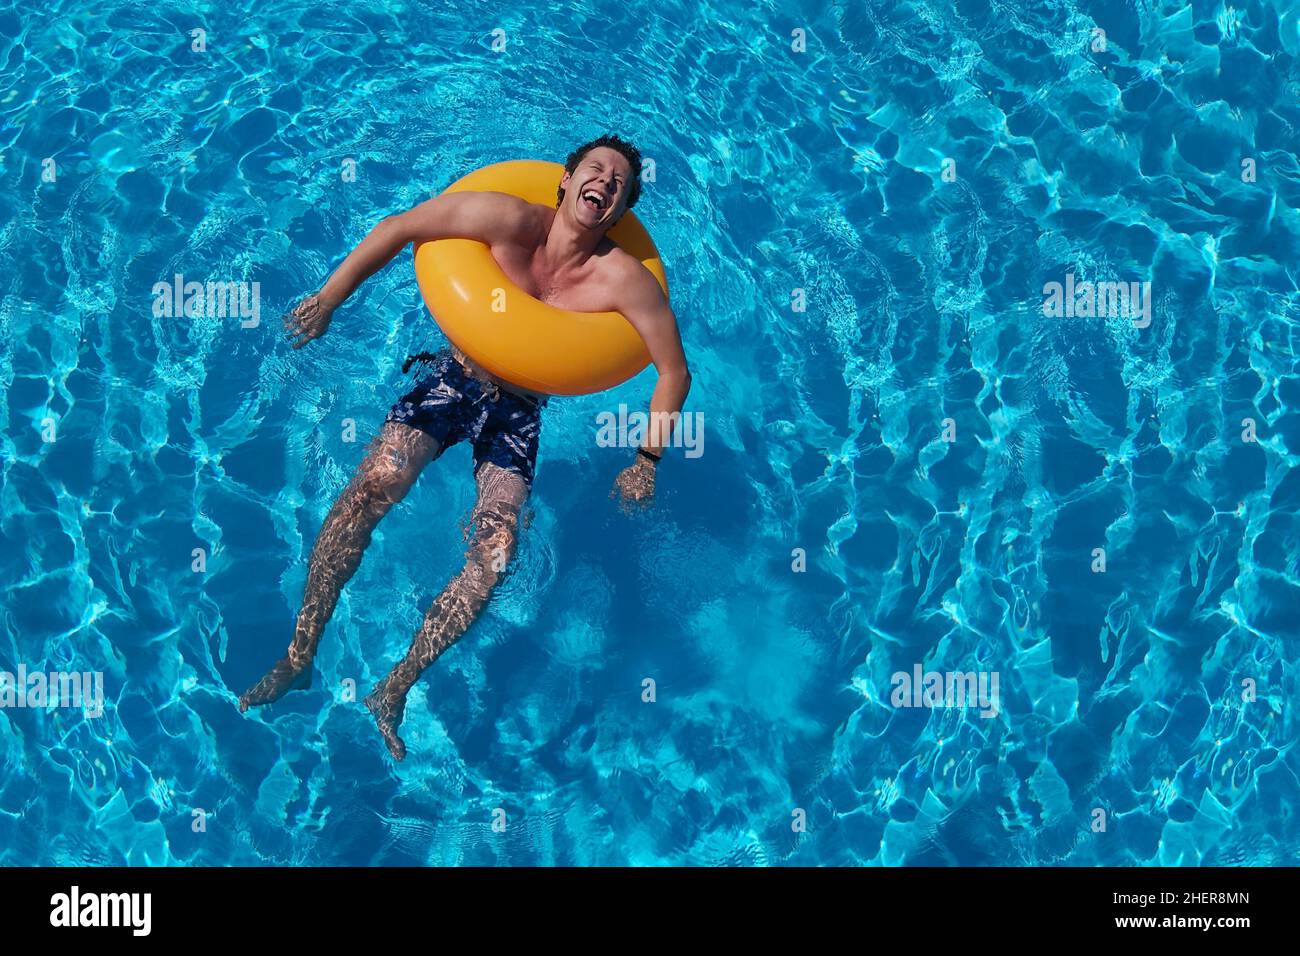 Orange circle et riant gars dans la piscine d'été.Fond d'eau bleu saturé.Vacances d'été, rire, joie de vie et homme joyeux.Fête au bord de la piscine Banque D'Images